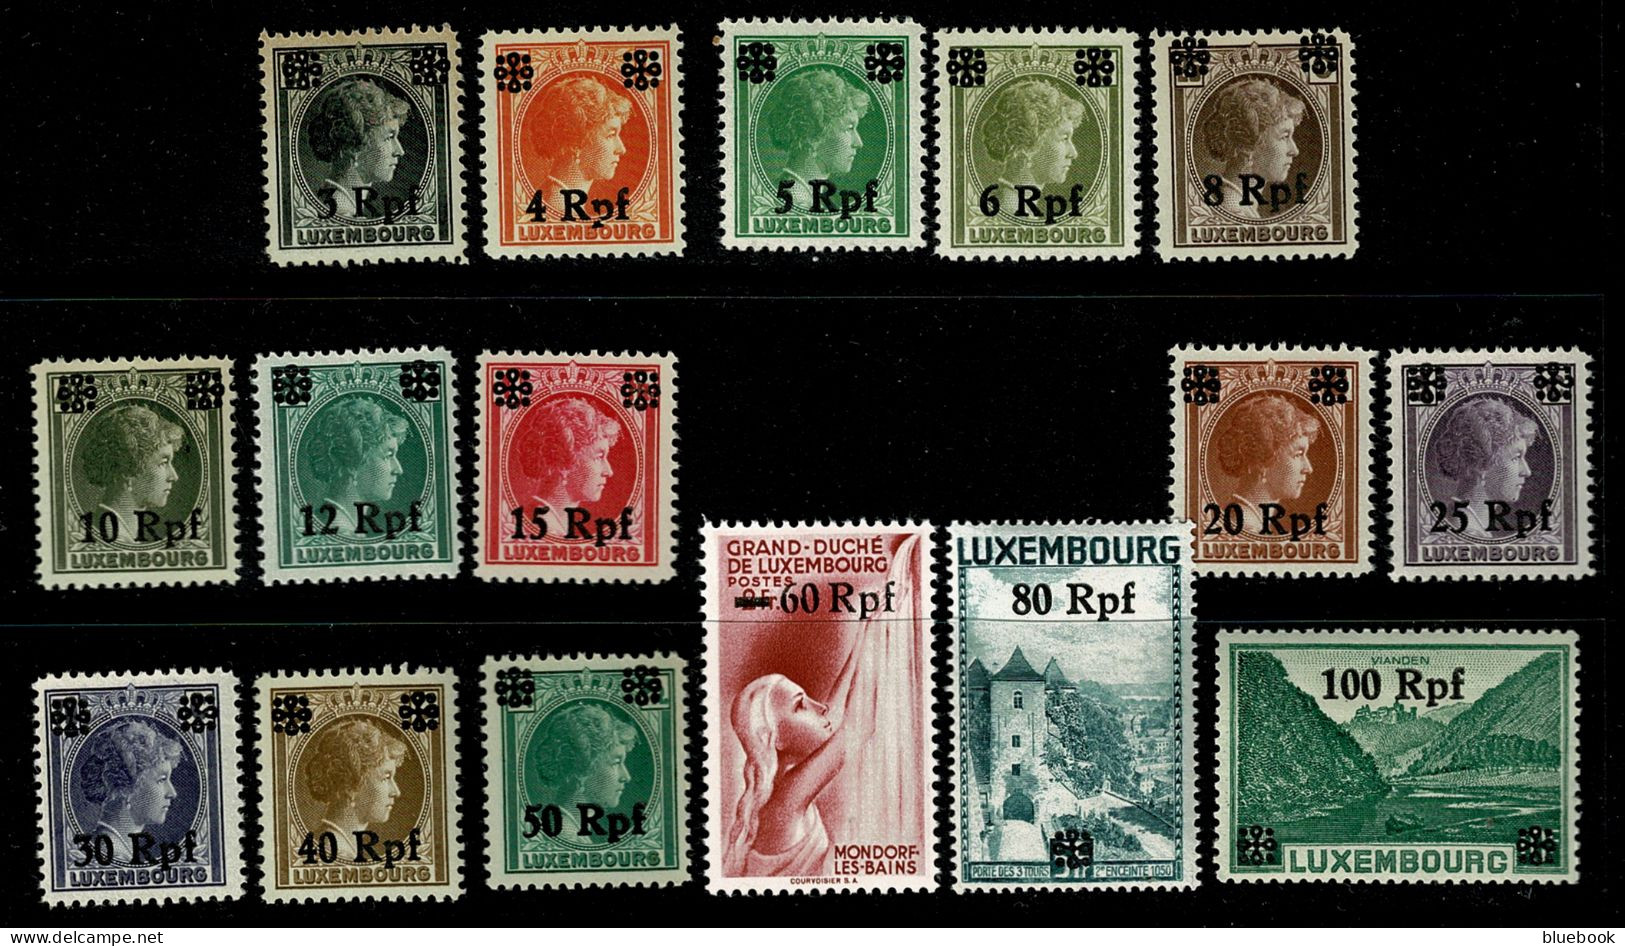 Ref 1646 - Germany Occupation Of Luxembourg - 1940 MNH Set SG 413-428 - 1940-1944 Deutsche Besatzung